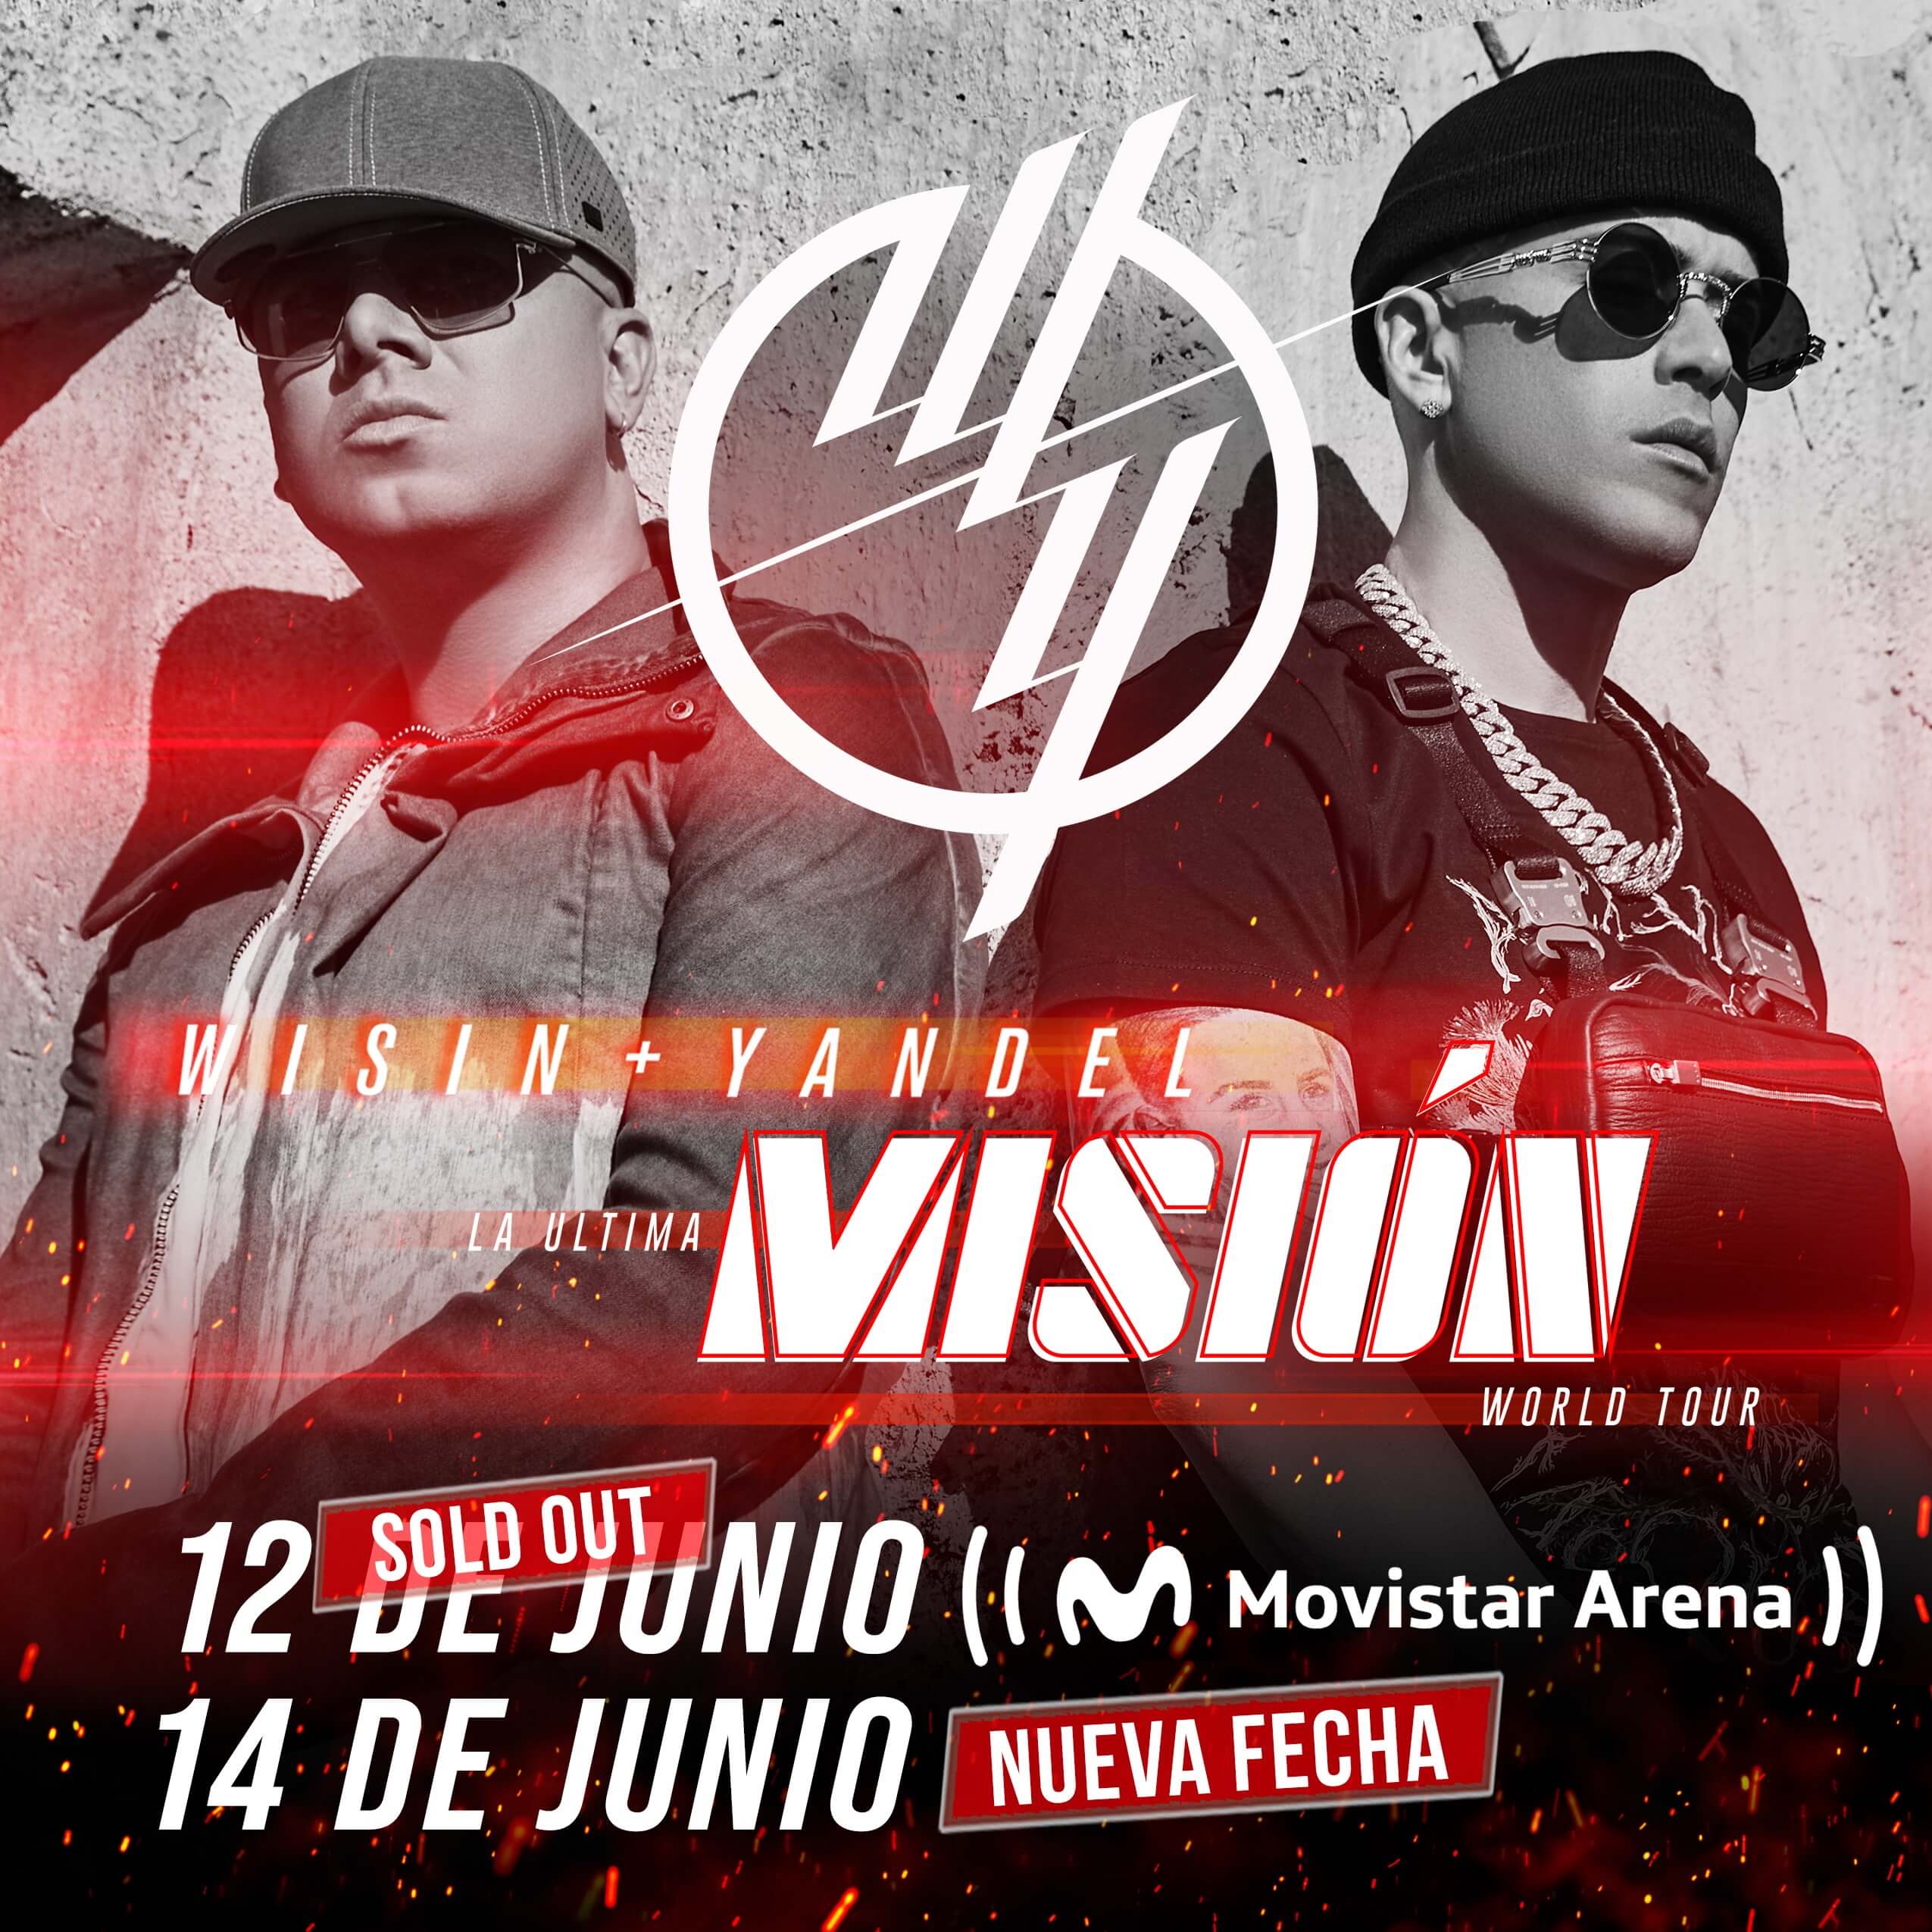 Tras agotar entradas en menos de 4 horas, Wisin y Yandel agregaron una nueva función en el Movistar Arena